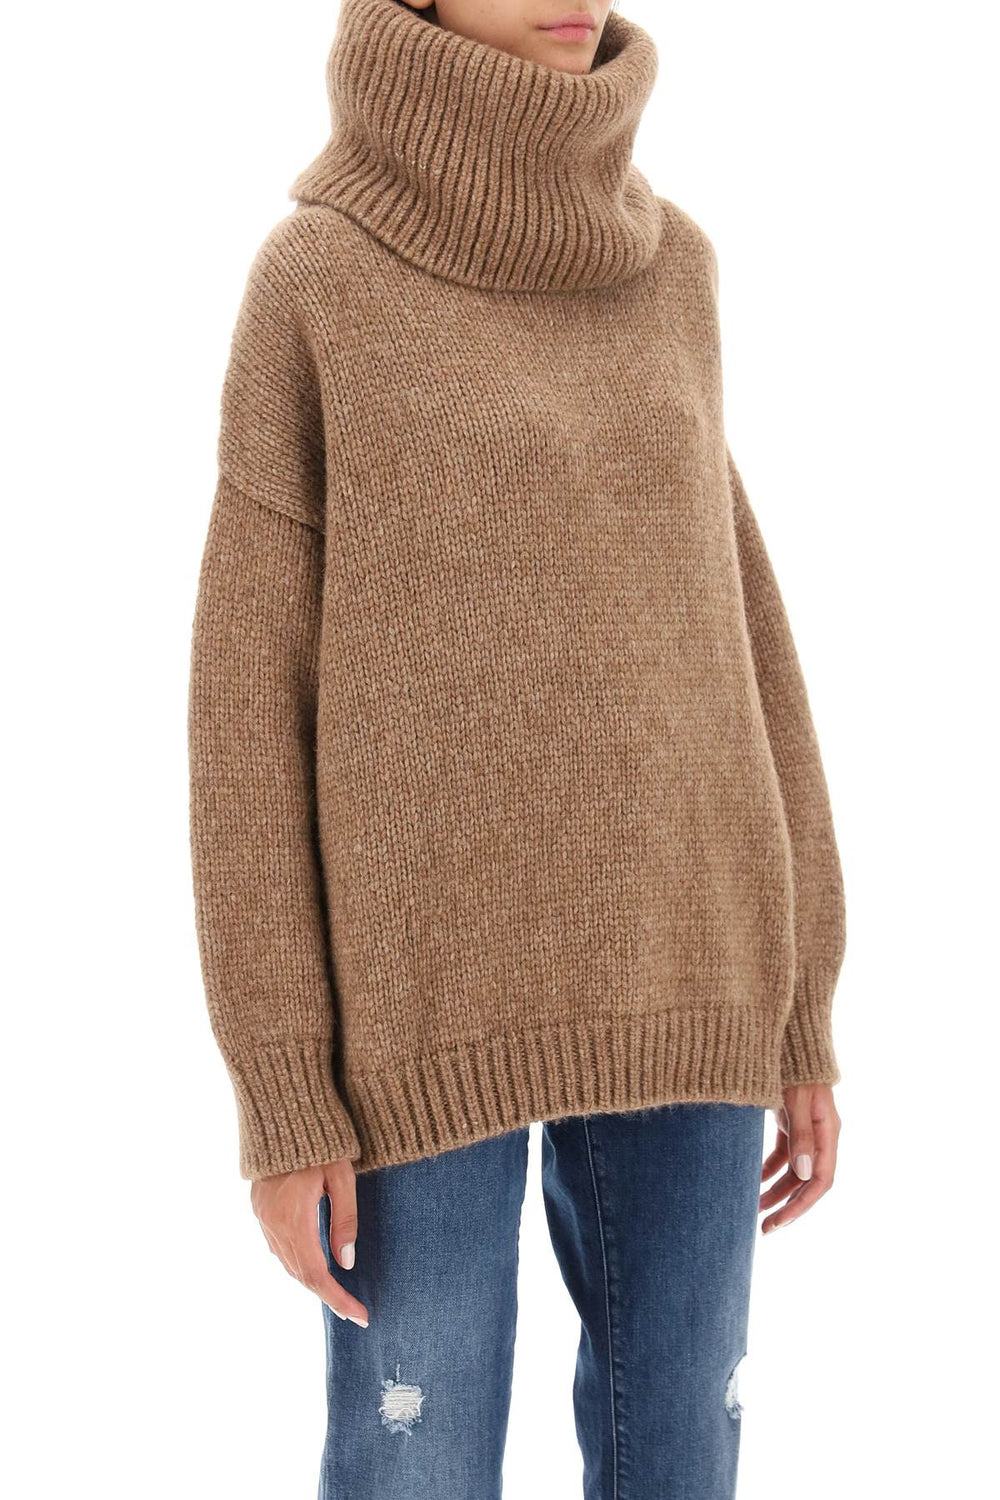 Dolce & gabbana oversized llama sweater-1